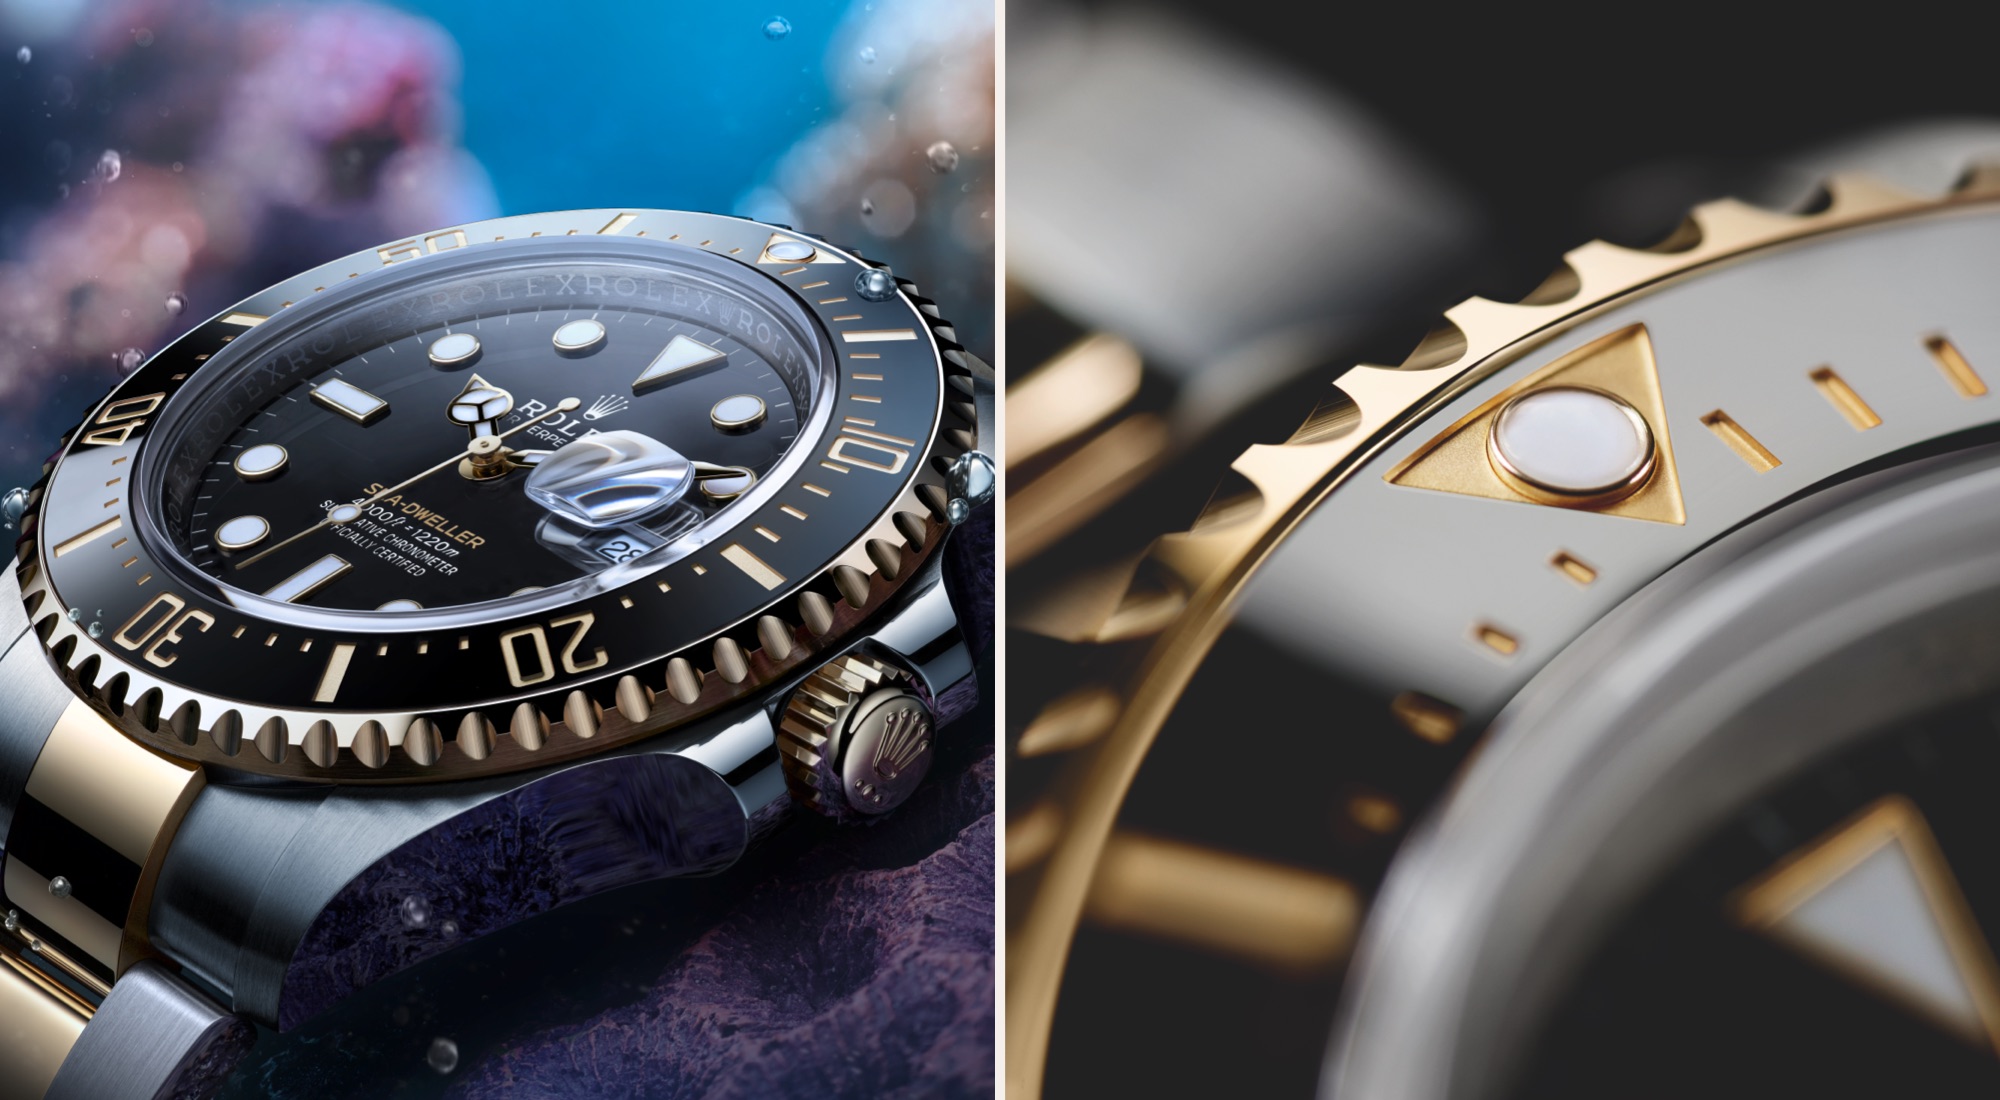 Rolex Sea-Dweller watches 